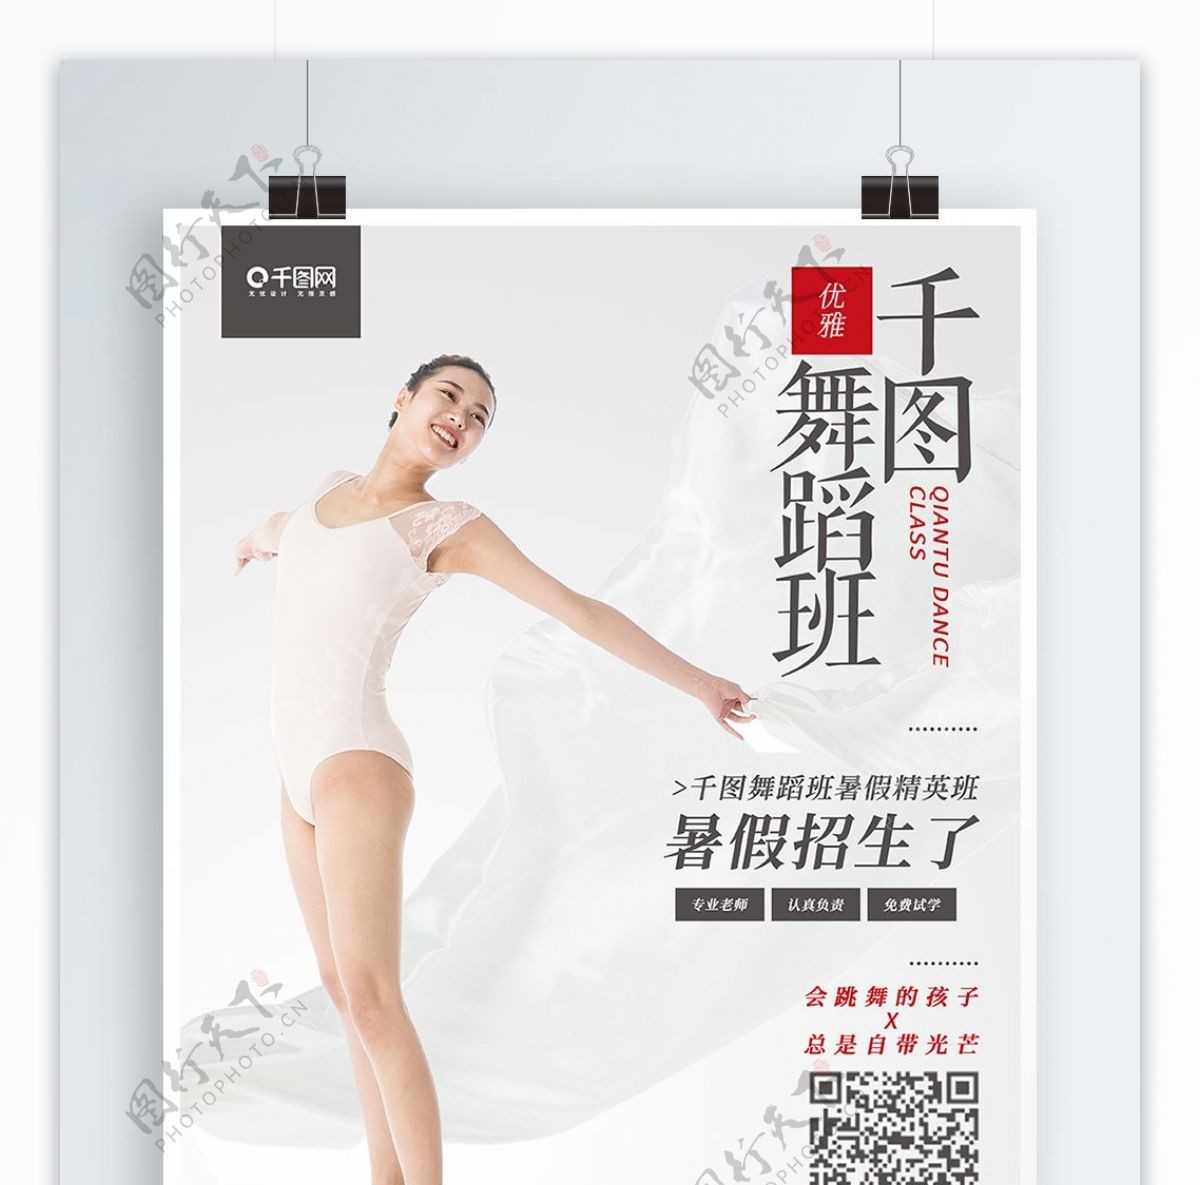 千图舞蹈班简约版招聘舞蹈海报